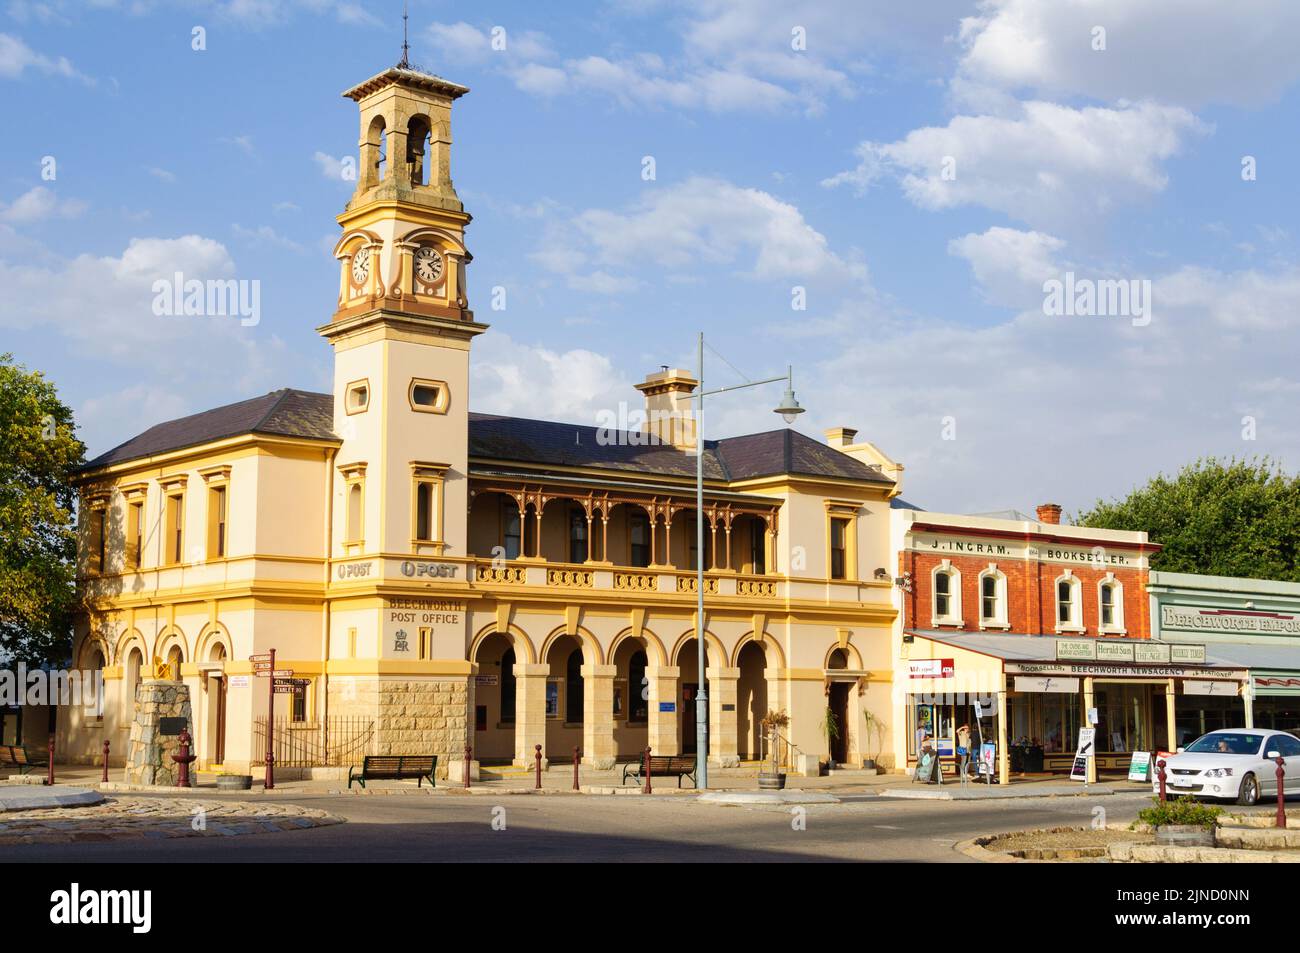 Dieses historische Postamt wurde bis Ende 2018 von der Australia Post genutzt - Beechworth, Victoria, Australien Stockfoto